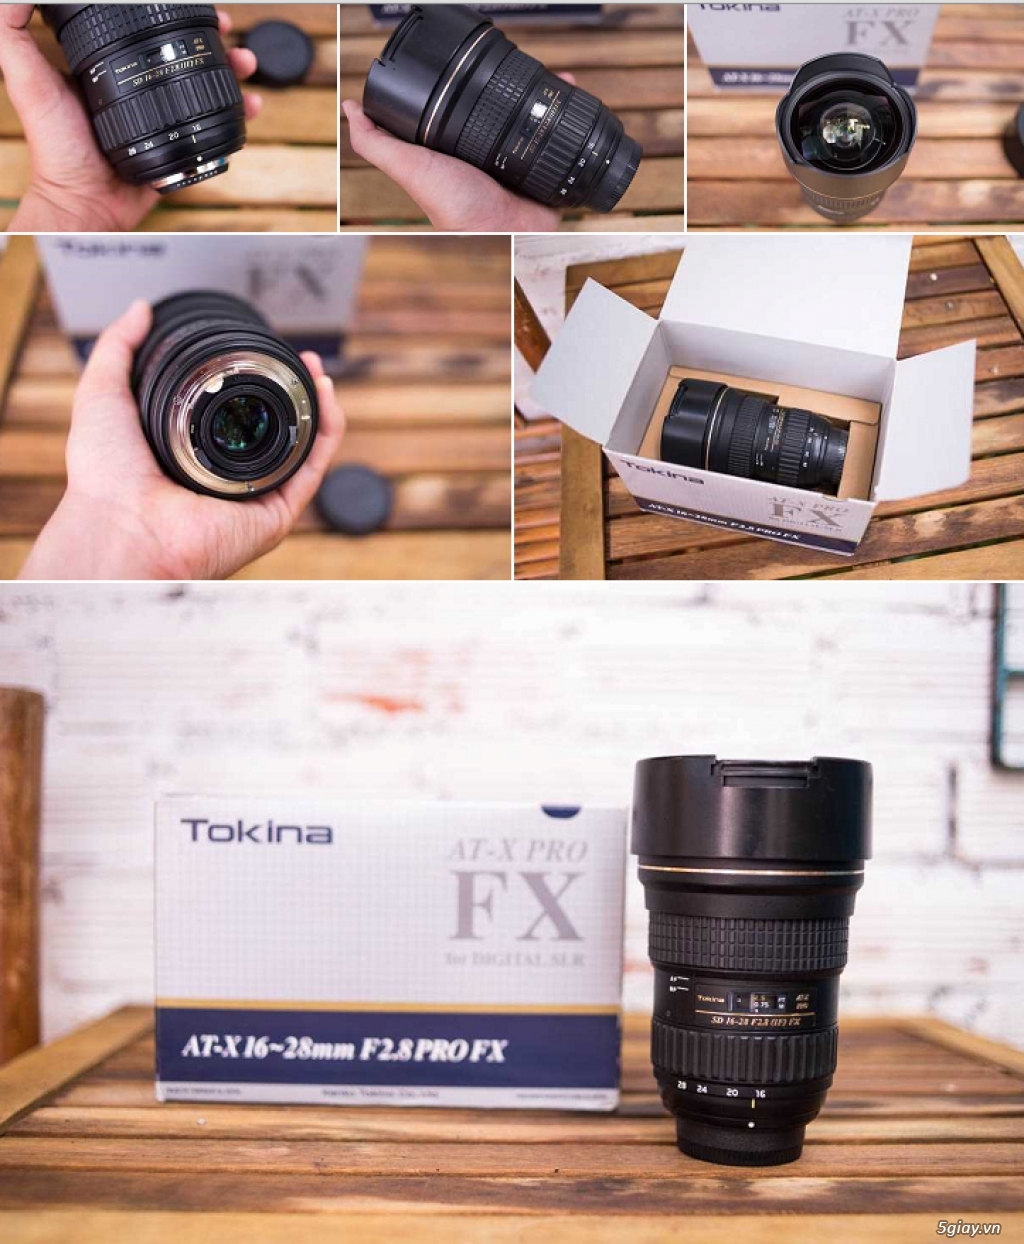 Tokina 16-28 F2.8 FX Pro + Tamron 28-75 f2.8 for Nikon,pin wasabi FW50, Lplate a6k